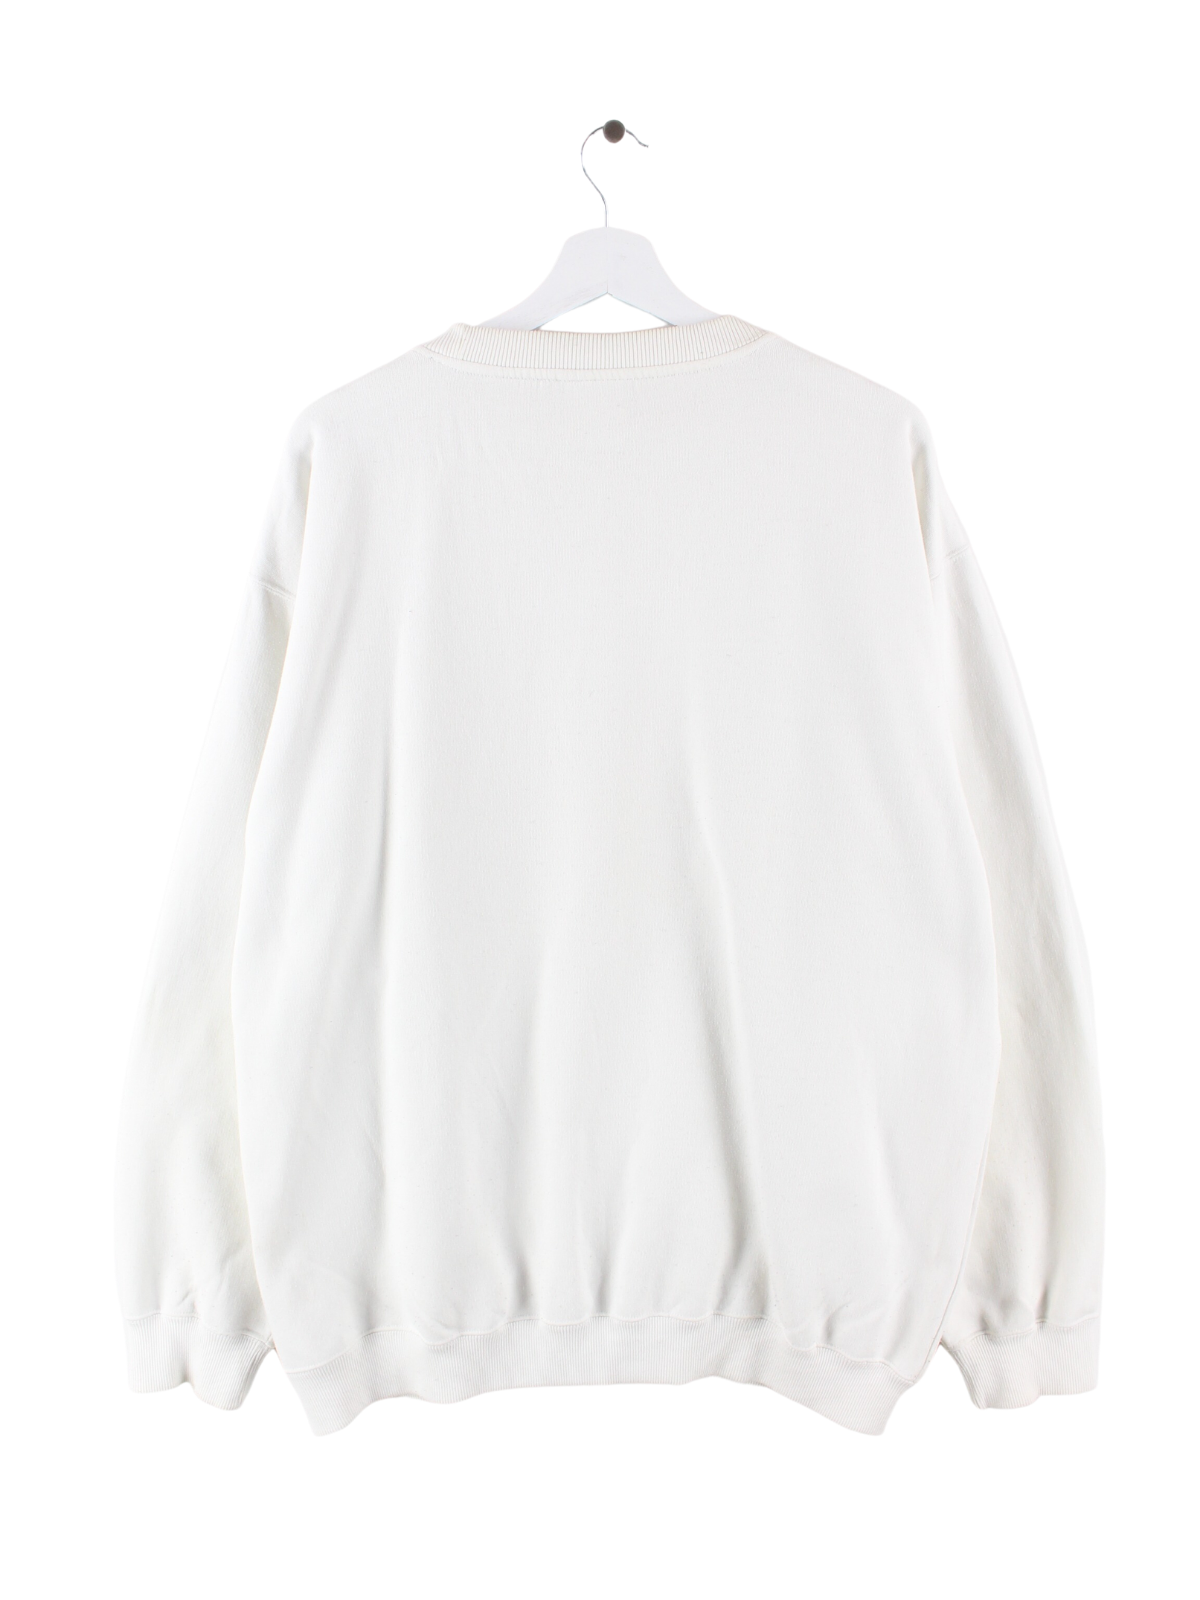 Reebok Basic Sweater Weiß L